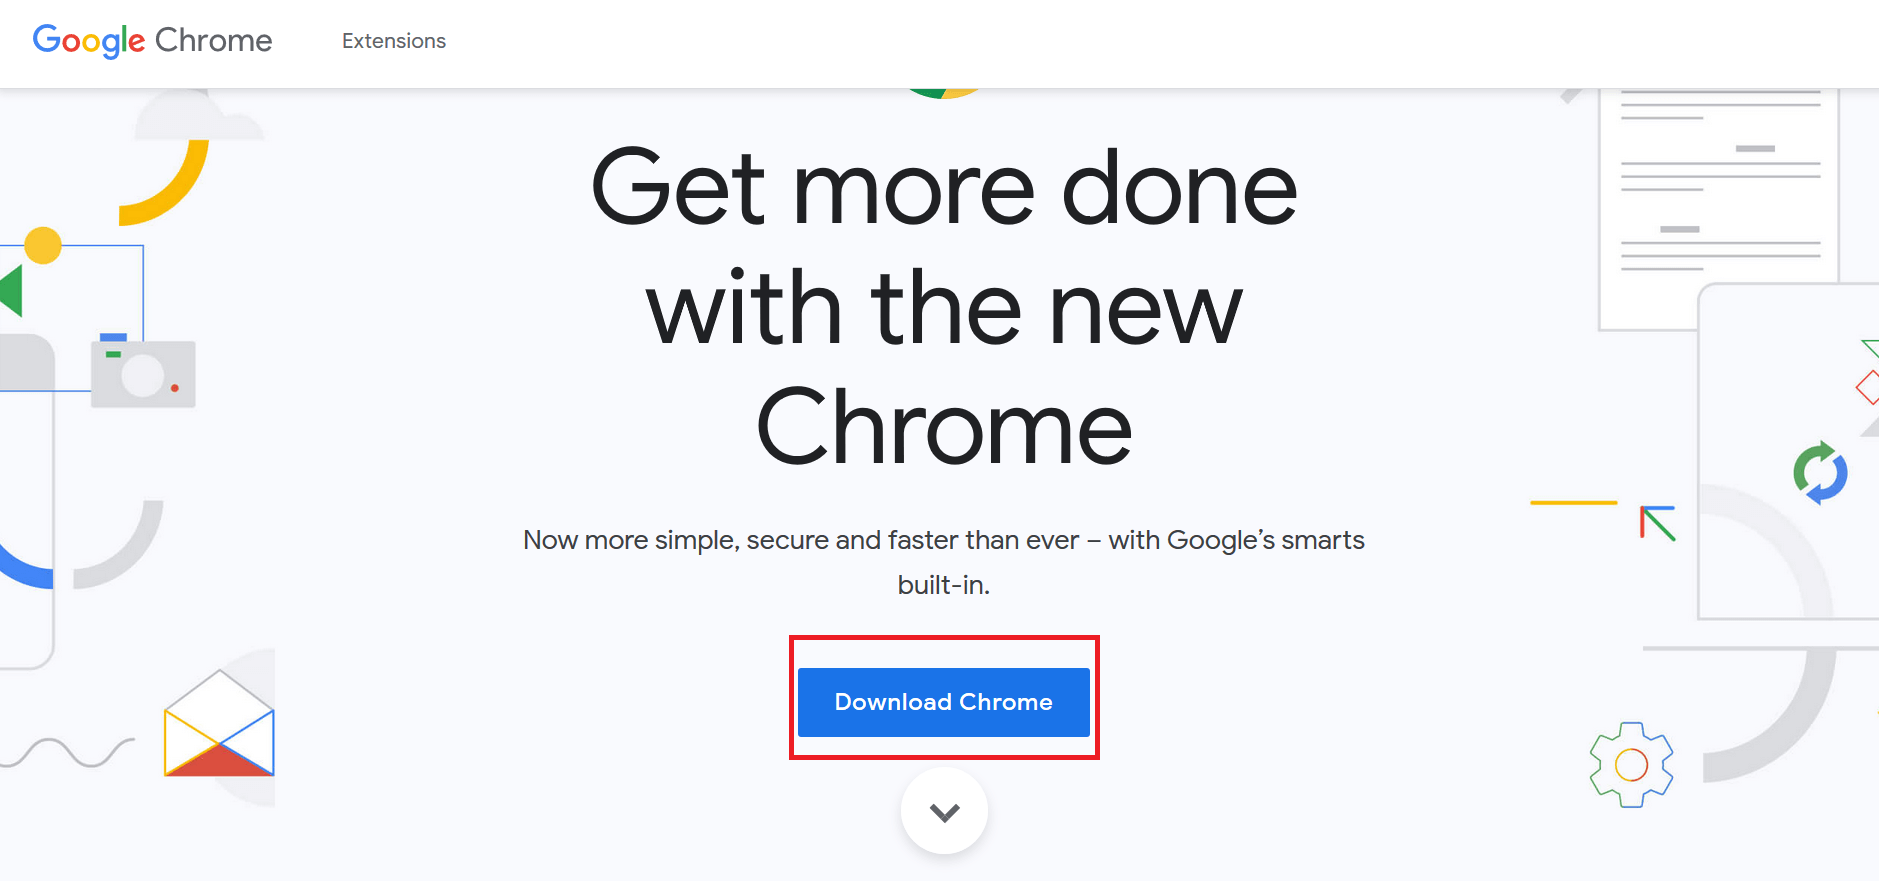 нажмите кнопку «Загрузить Chrome», чтобы загрузить последнюю версию установщика Chrome.